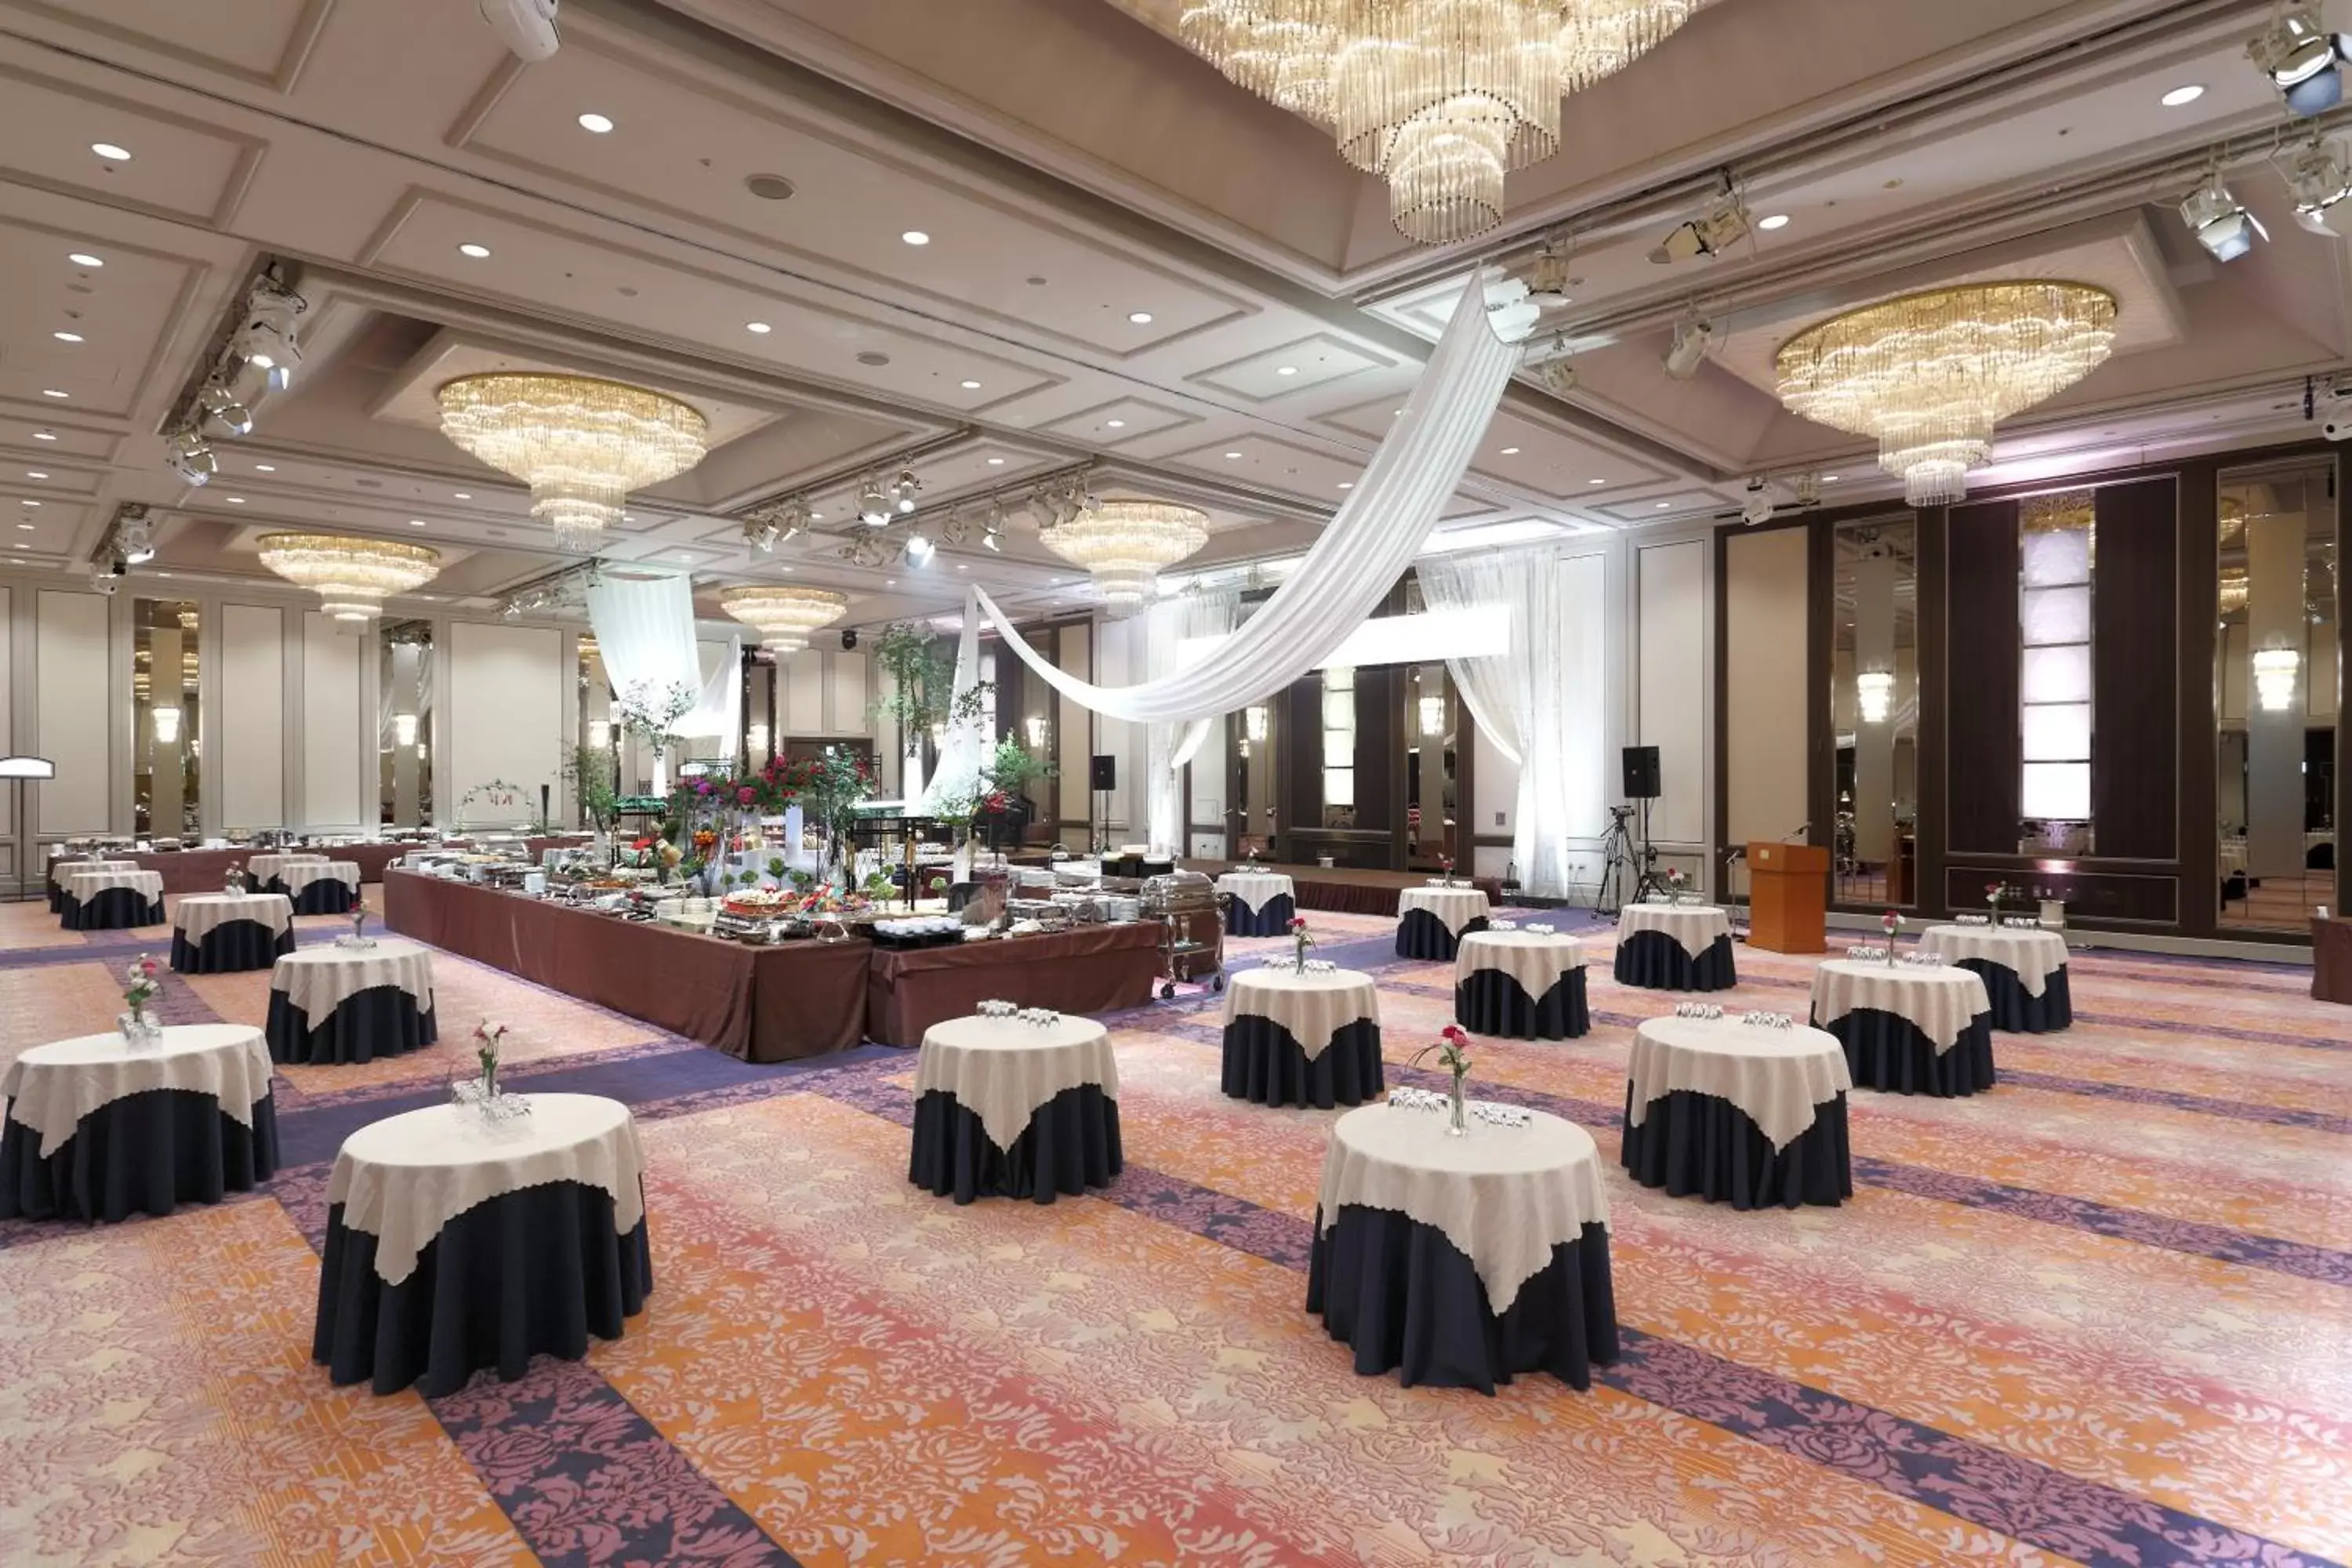 Banquet/Function facilities, Banquet Facilities in Palace Hotel Omiya